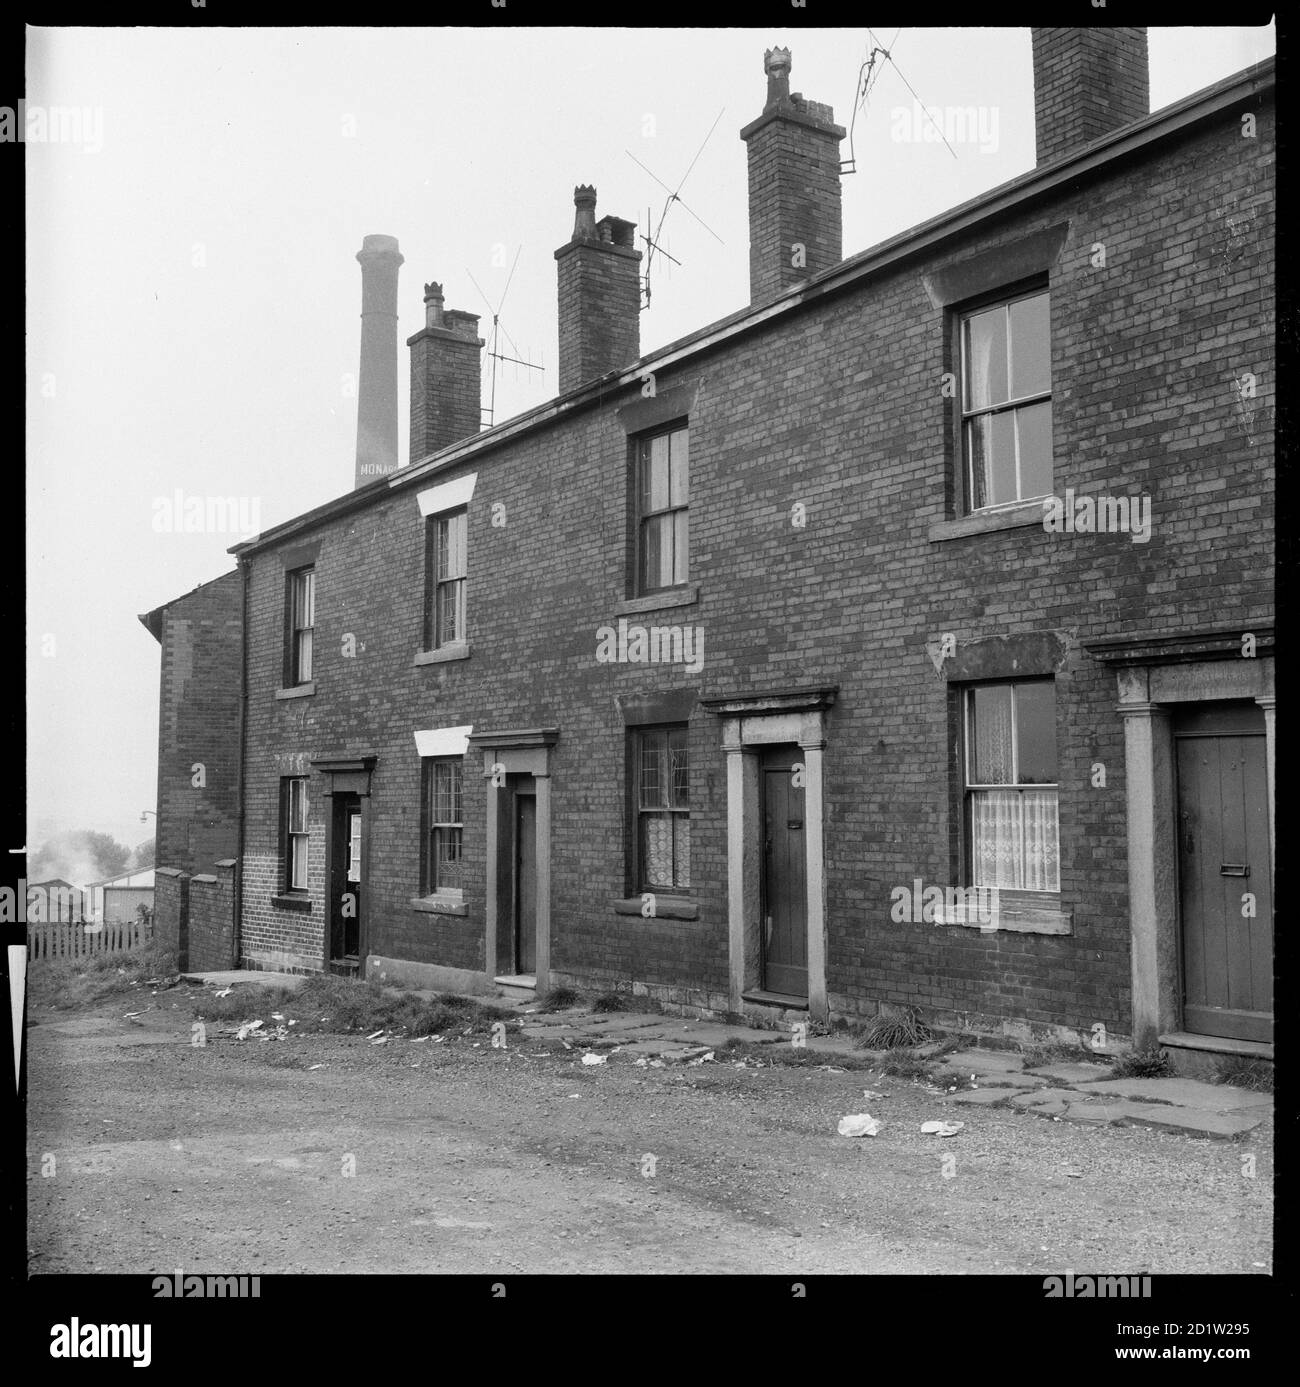 Das Äußere von 2-8 Sparrow Street mit dem Kamin von Monarch Mill in Stocking über den Dächern, Oldham, Greater Manchester, Großbritannien. Stockfoto